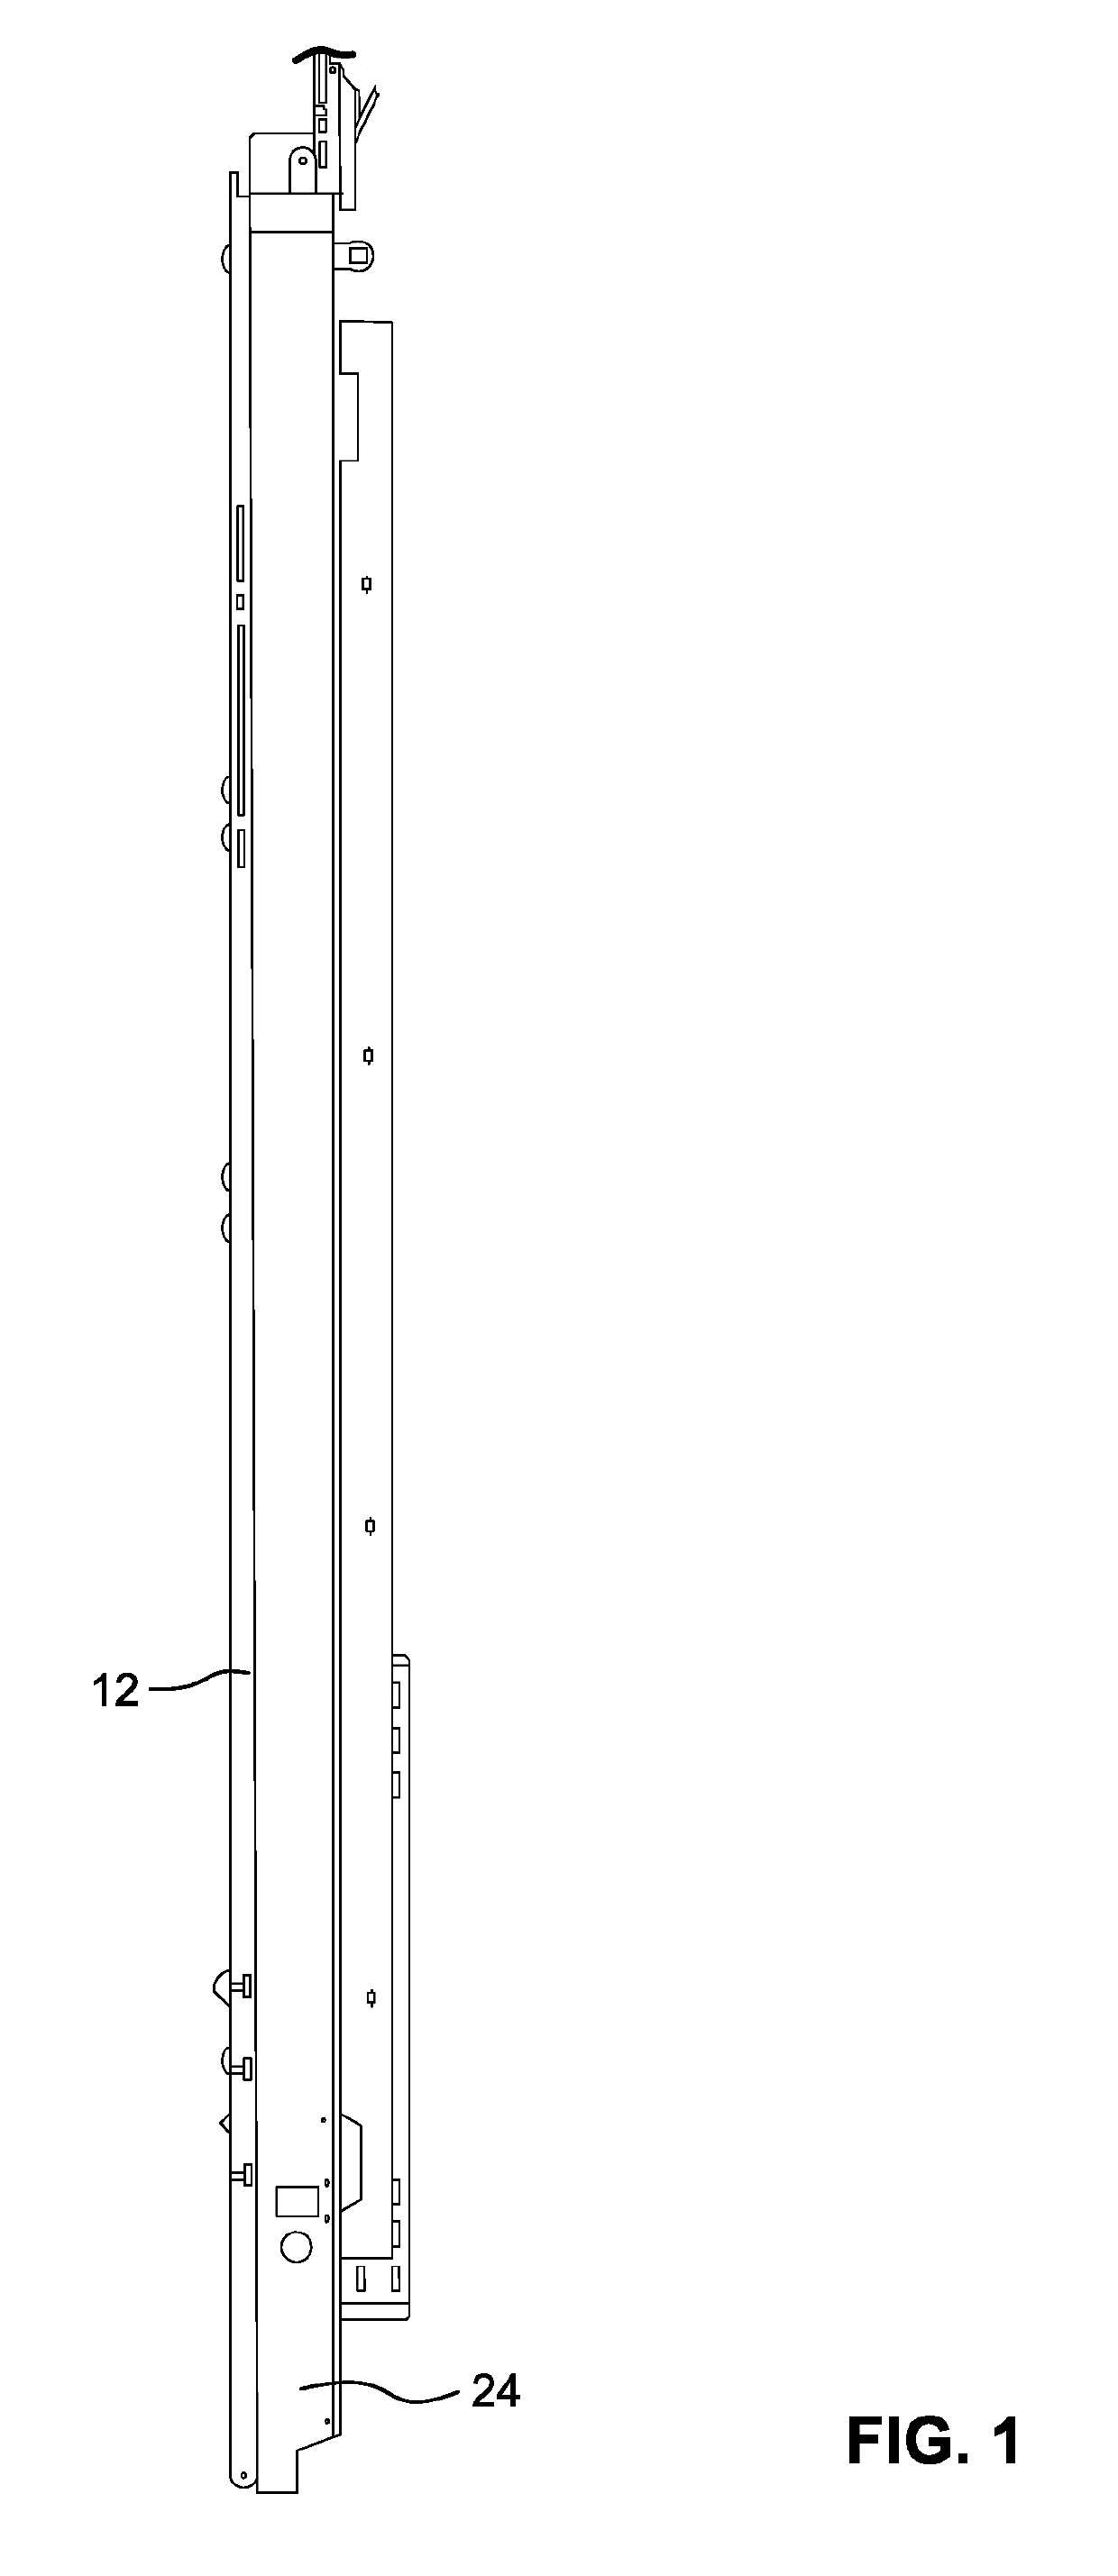 Ramp door operating mechanism